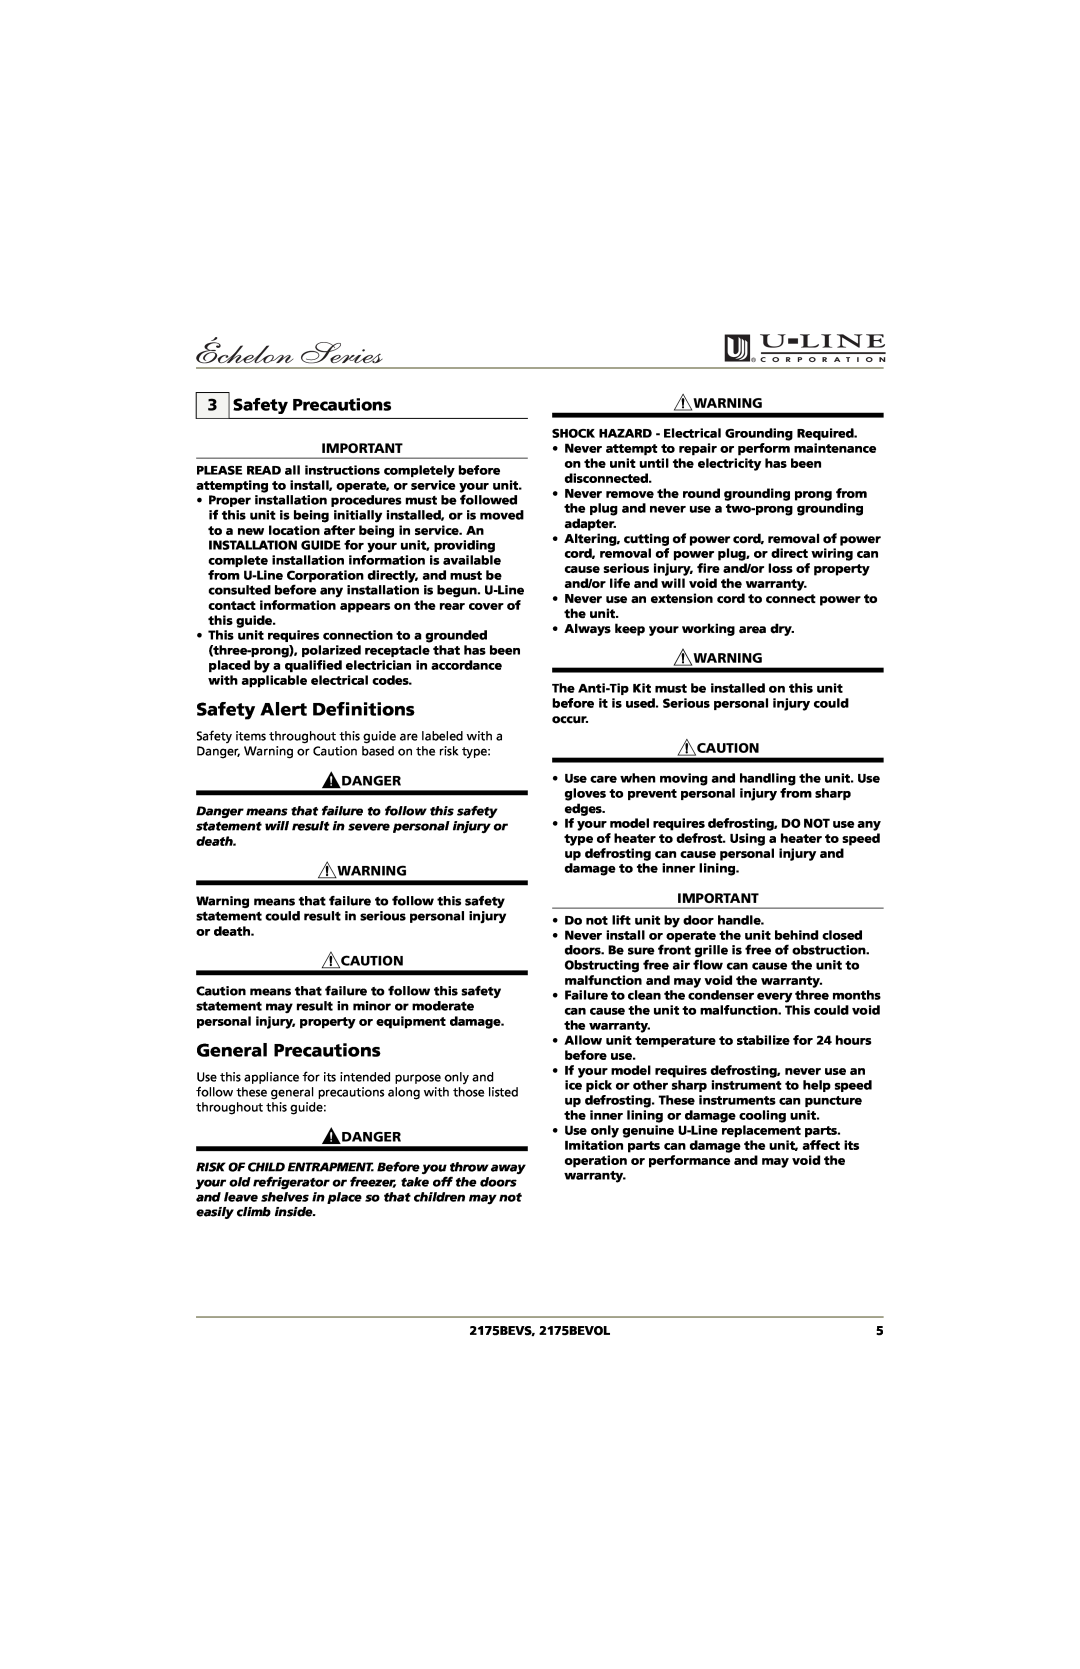 U-Line manual Safety Alert Definitions, General Precautions, Safety Precautions, Danger, 2175BEVS, 2175BEVOL 